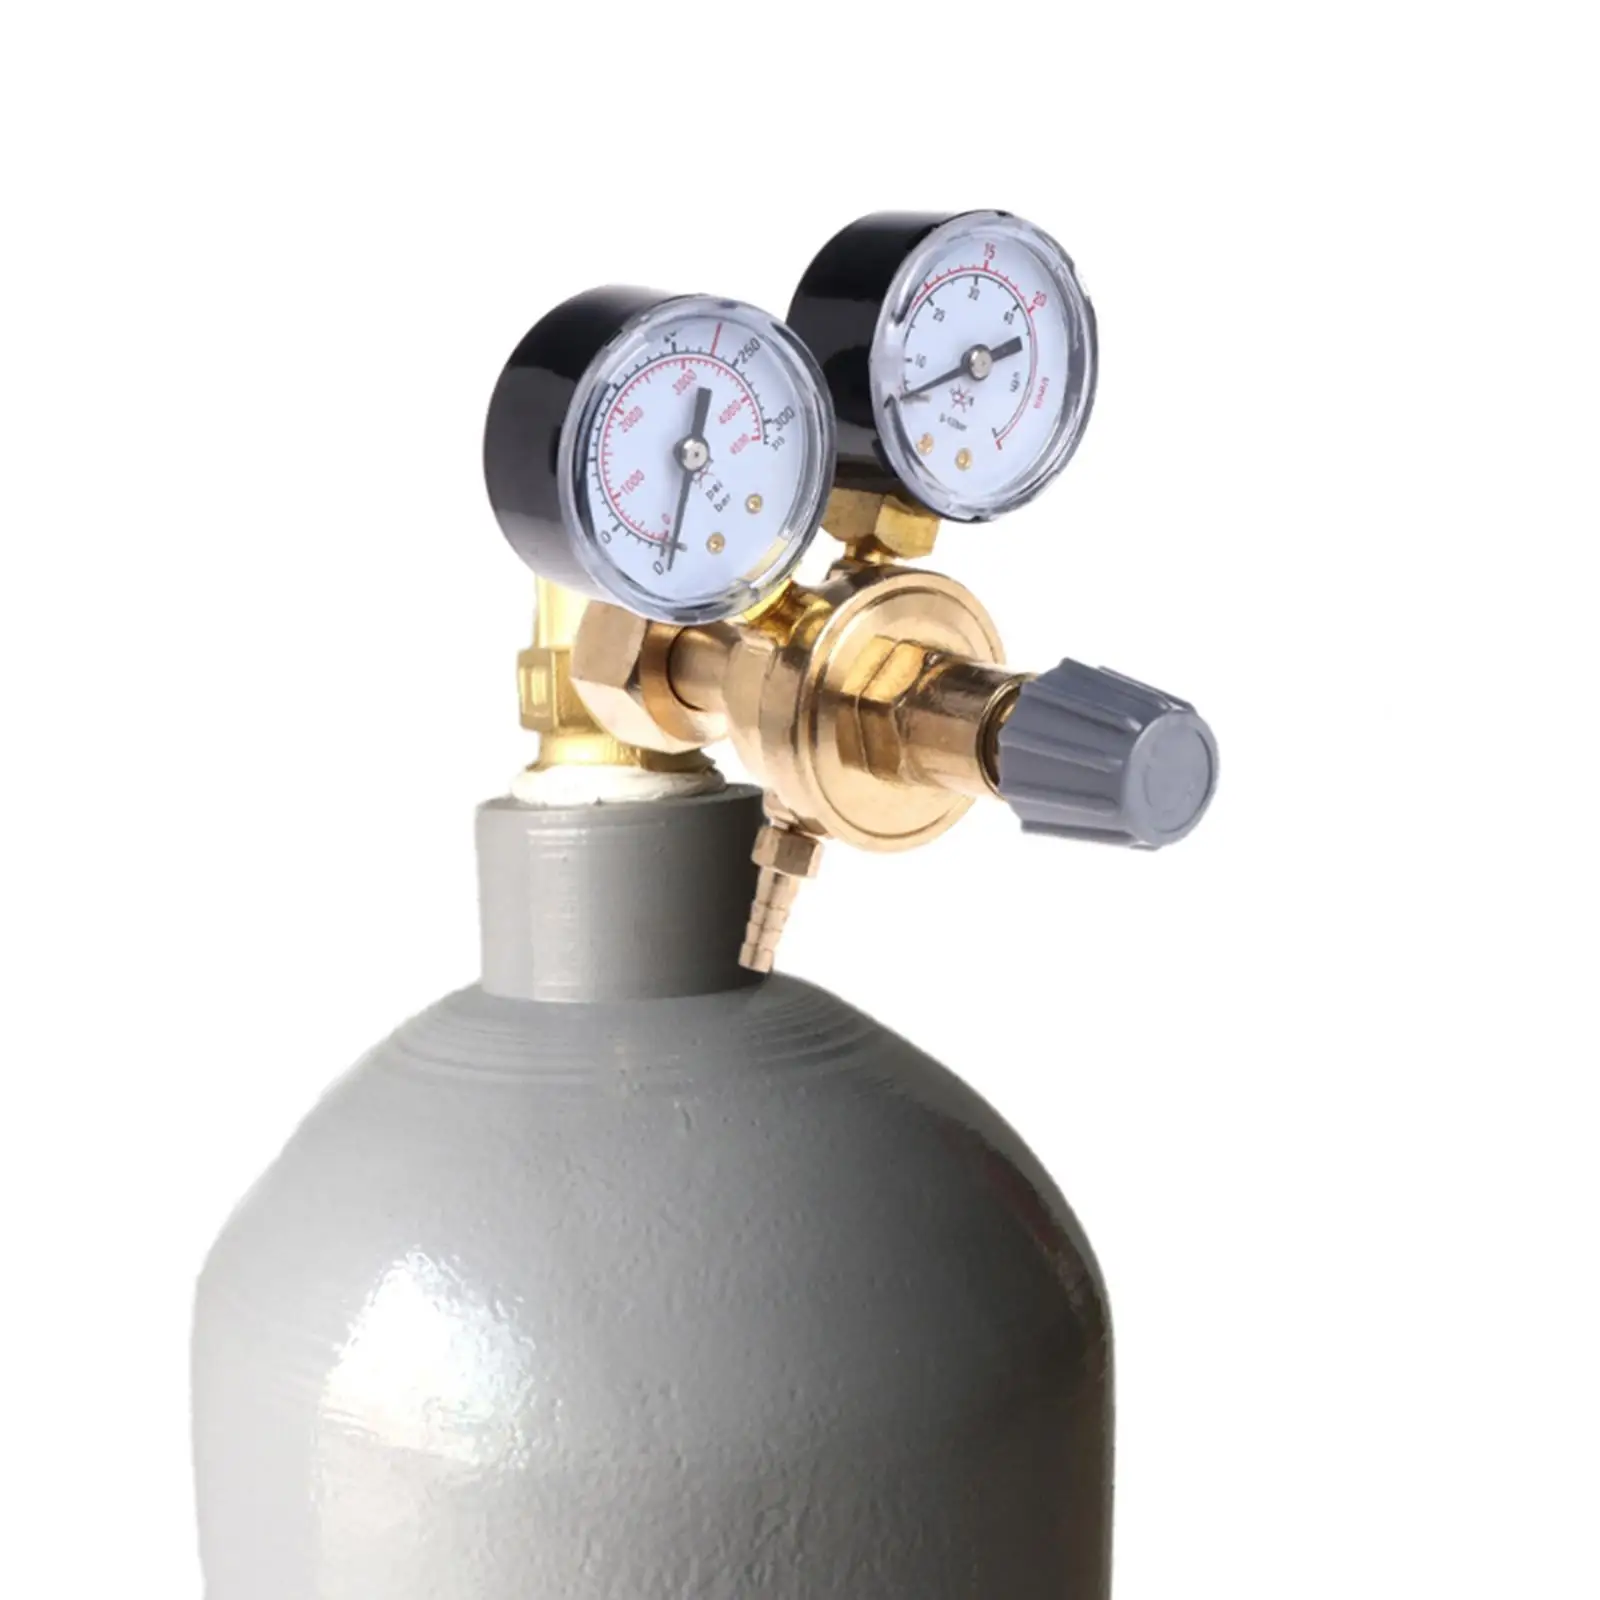 Flow Pressure Regulator  Reducer  Adapter  Adjustable Durable  Pressure Carbon Dioxide Welding Pressure Reducer